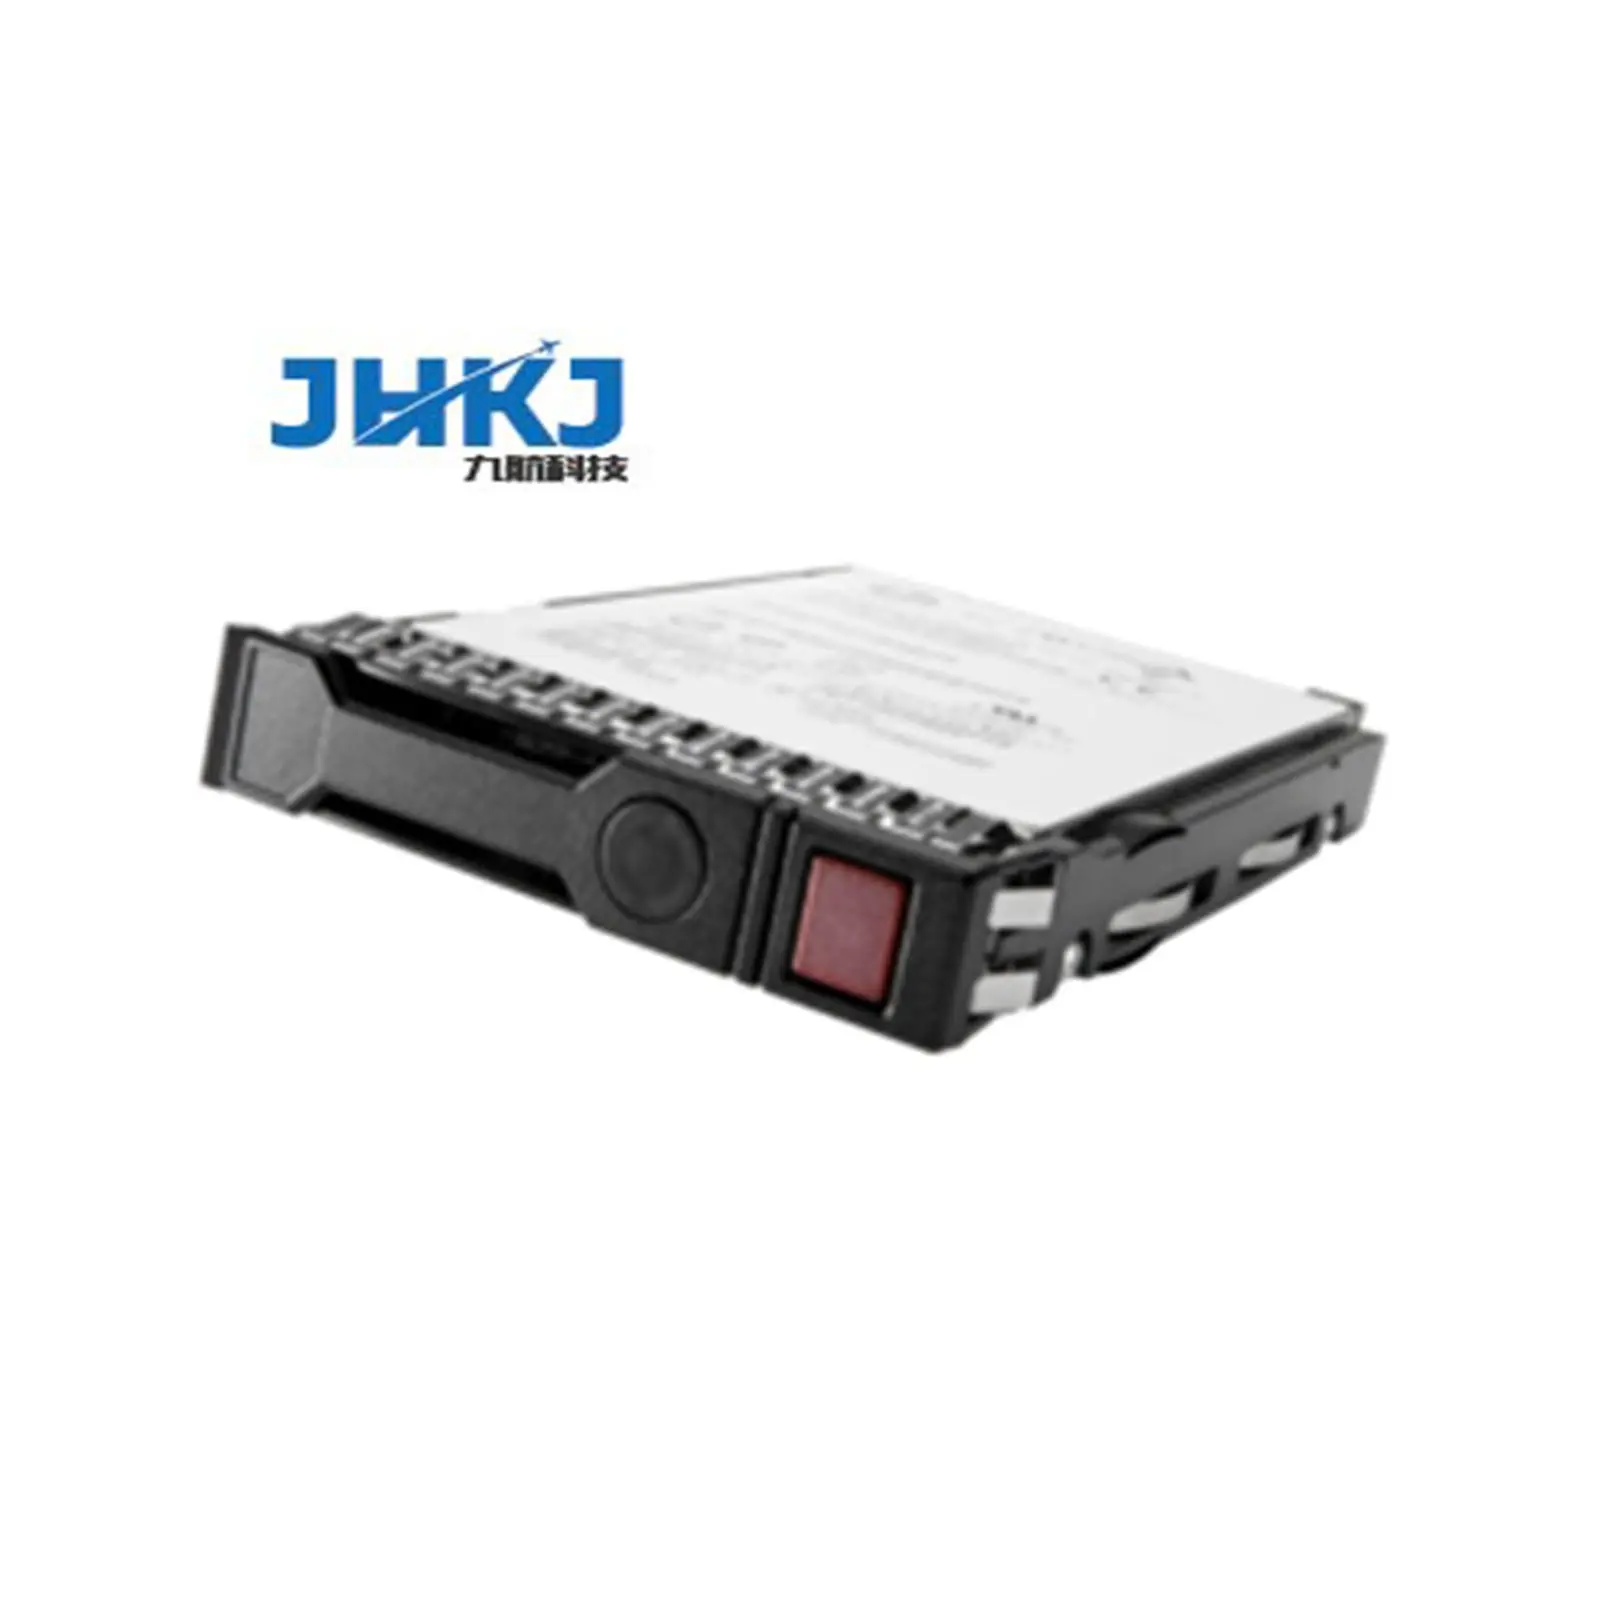 00WG666 600GB 15000rpm SAS 12gbps G3hs 2.5 inç sıcak Swap sert sürücü sistemi için X sunucu HDD sunucu sabit diski sabit Disk